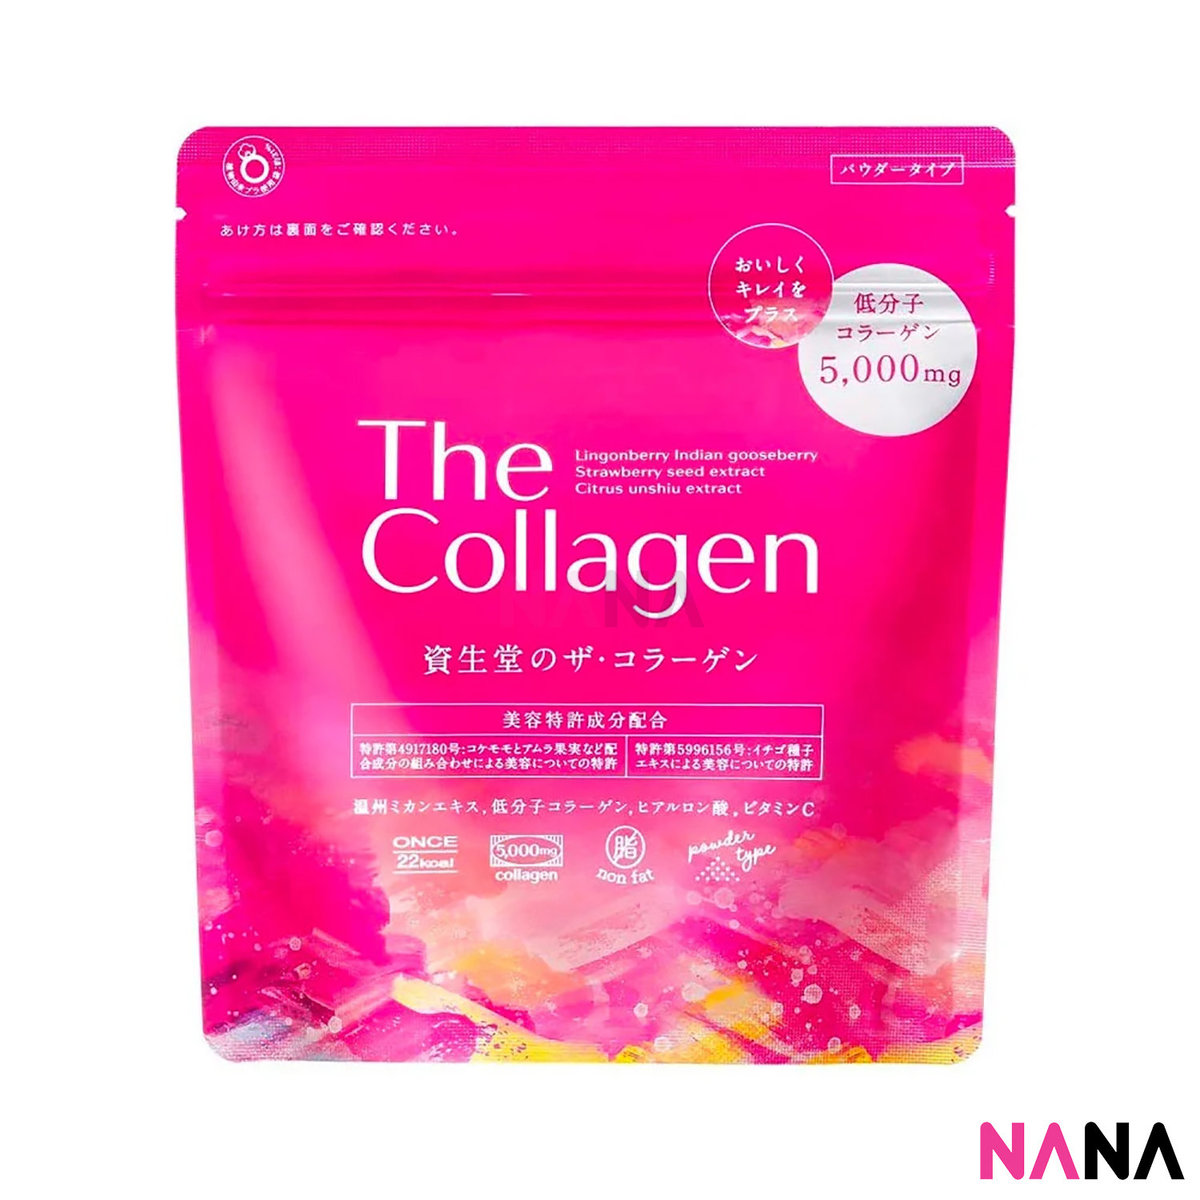 資生堂 The Collagen Powder 膠原蛋白粉 126g (約21日份)